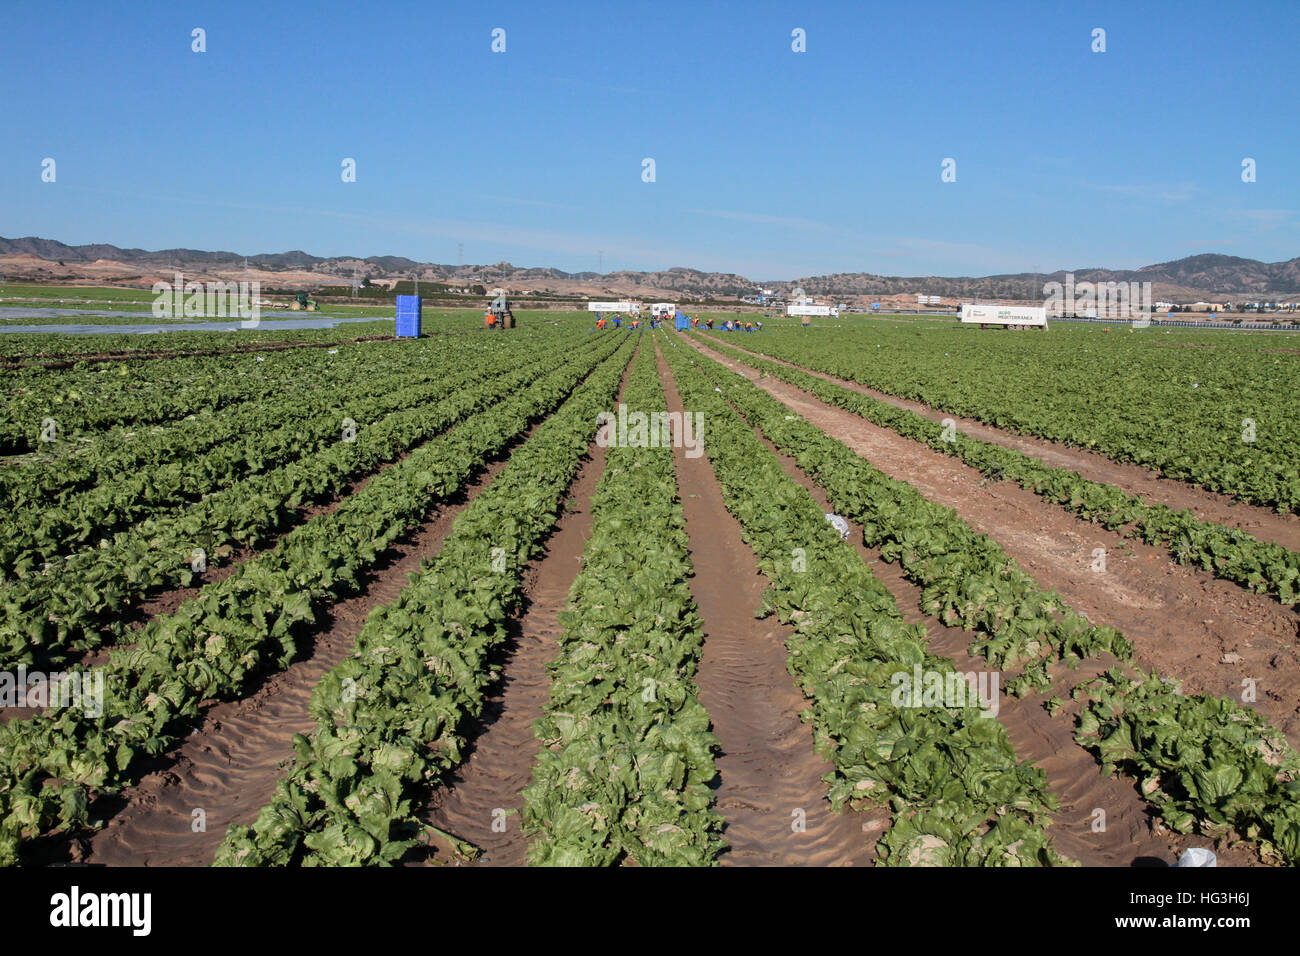 Province de Murcie, Espagne. Les travailleurs qui travaillent dans l'agriculture. Banque D'Images